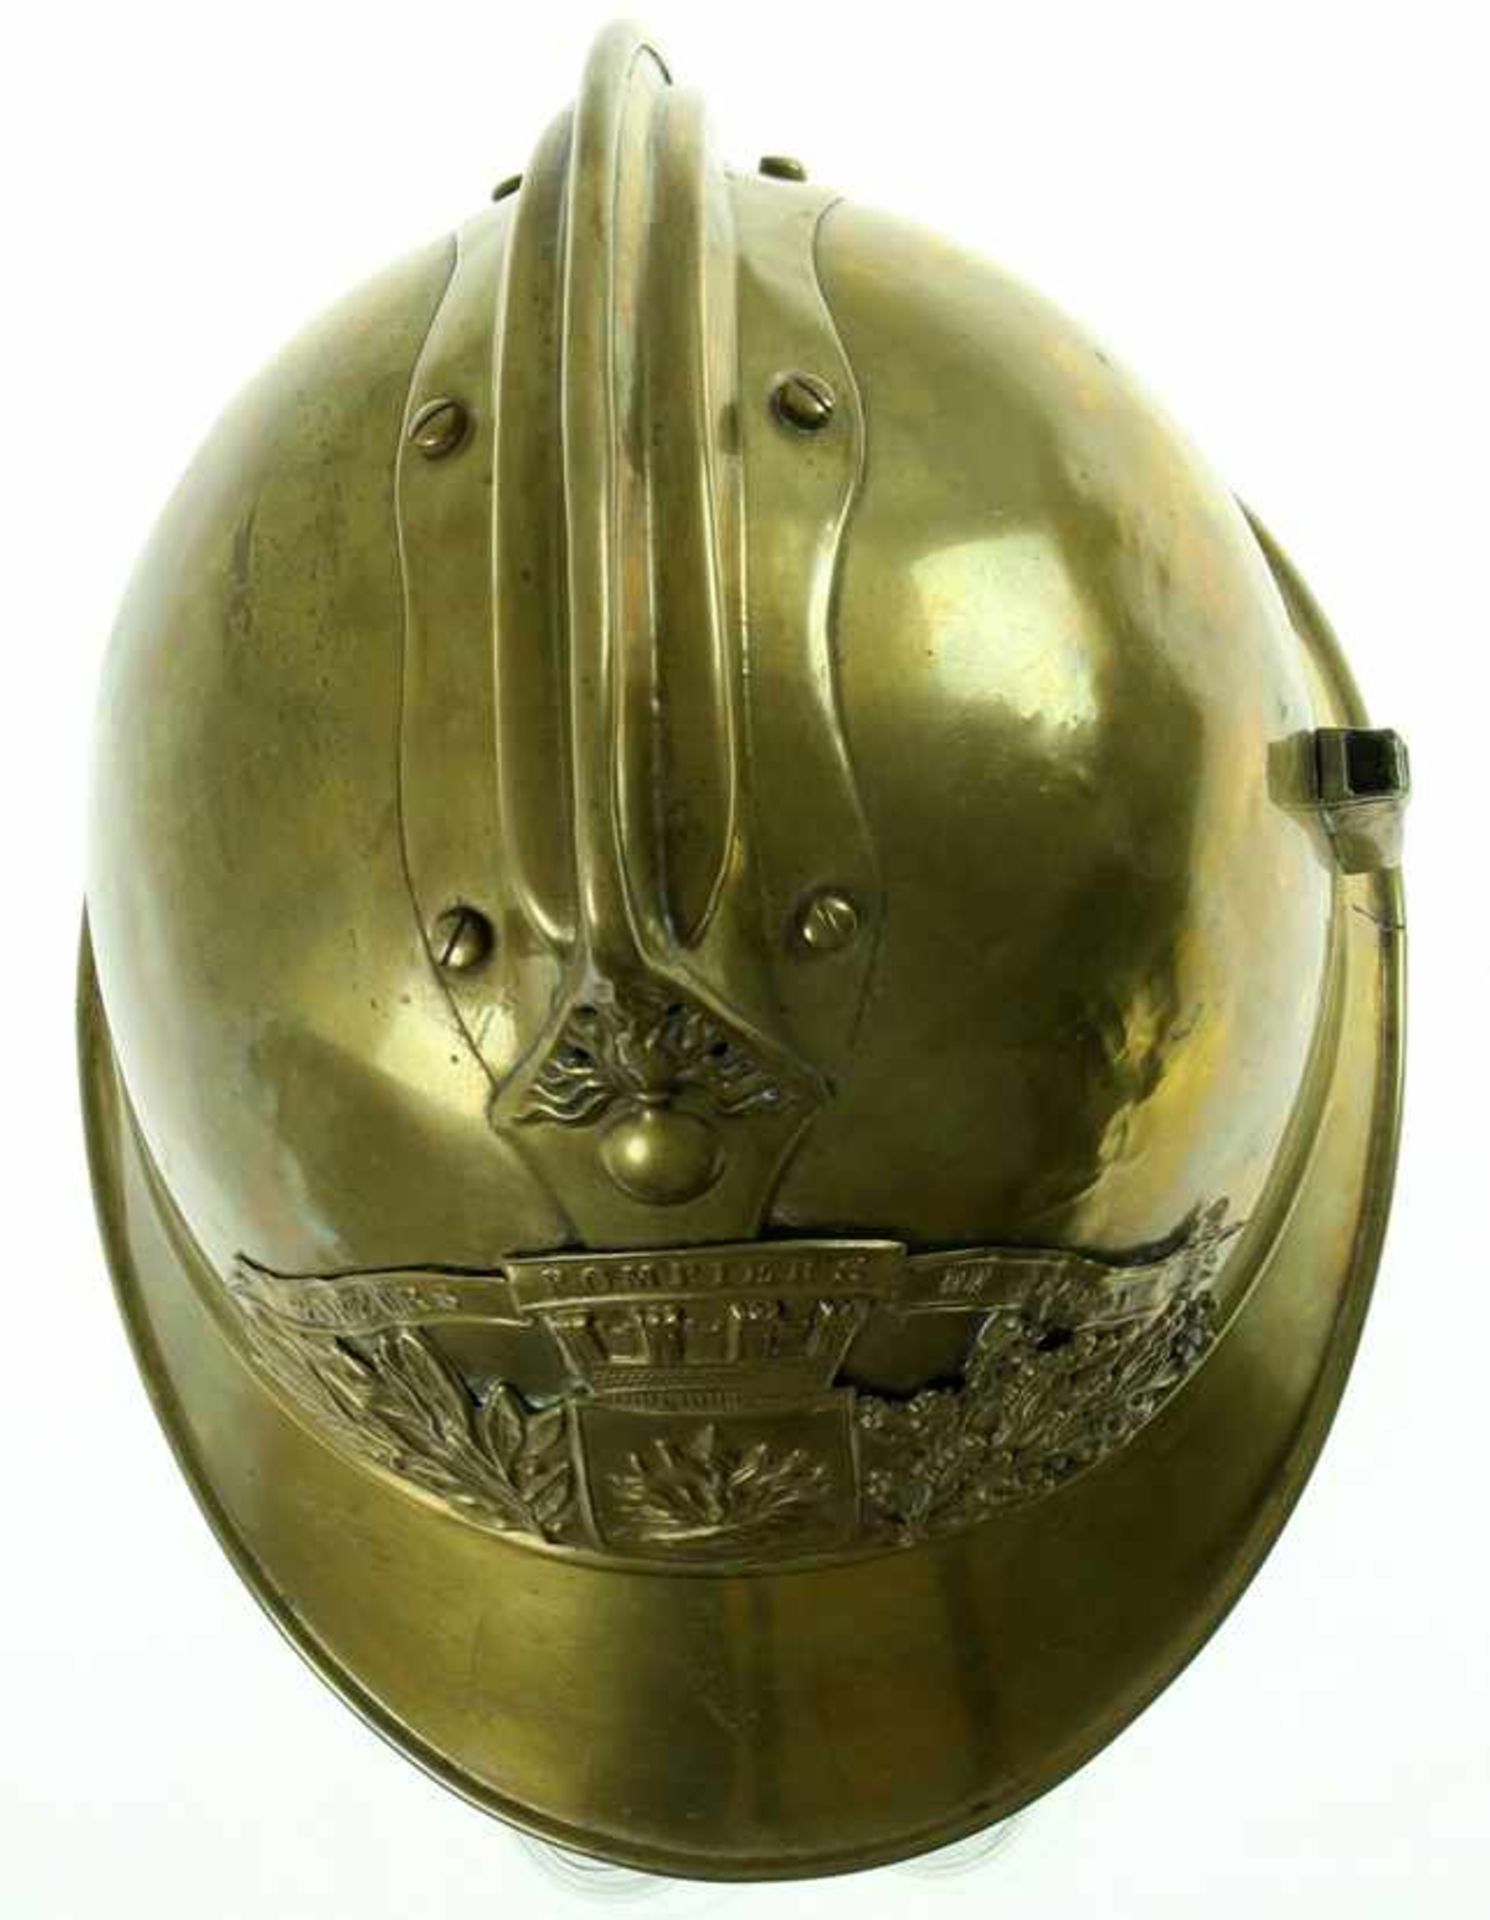 Frankrijk / France - Brass firefighter helmet, 'Sapeurs Pompiers de Cernoy', without liner